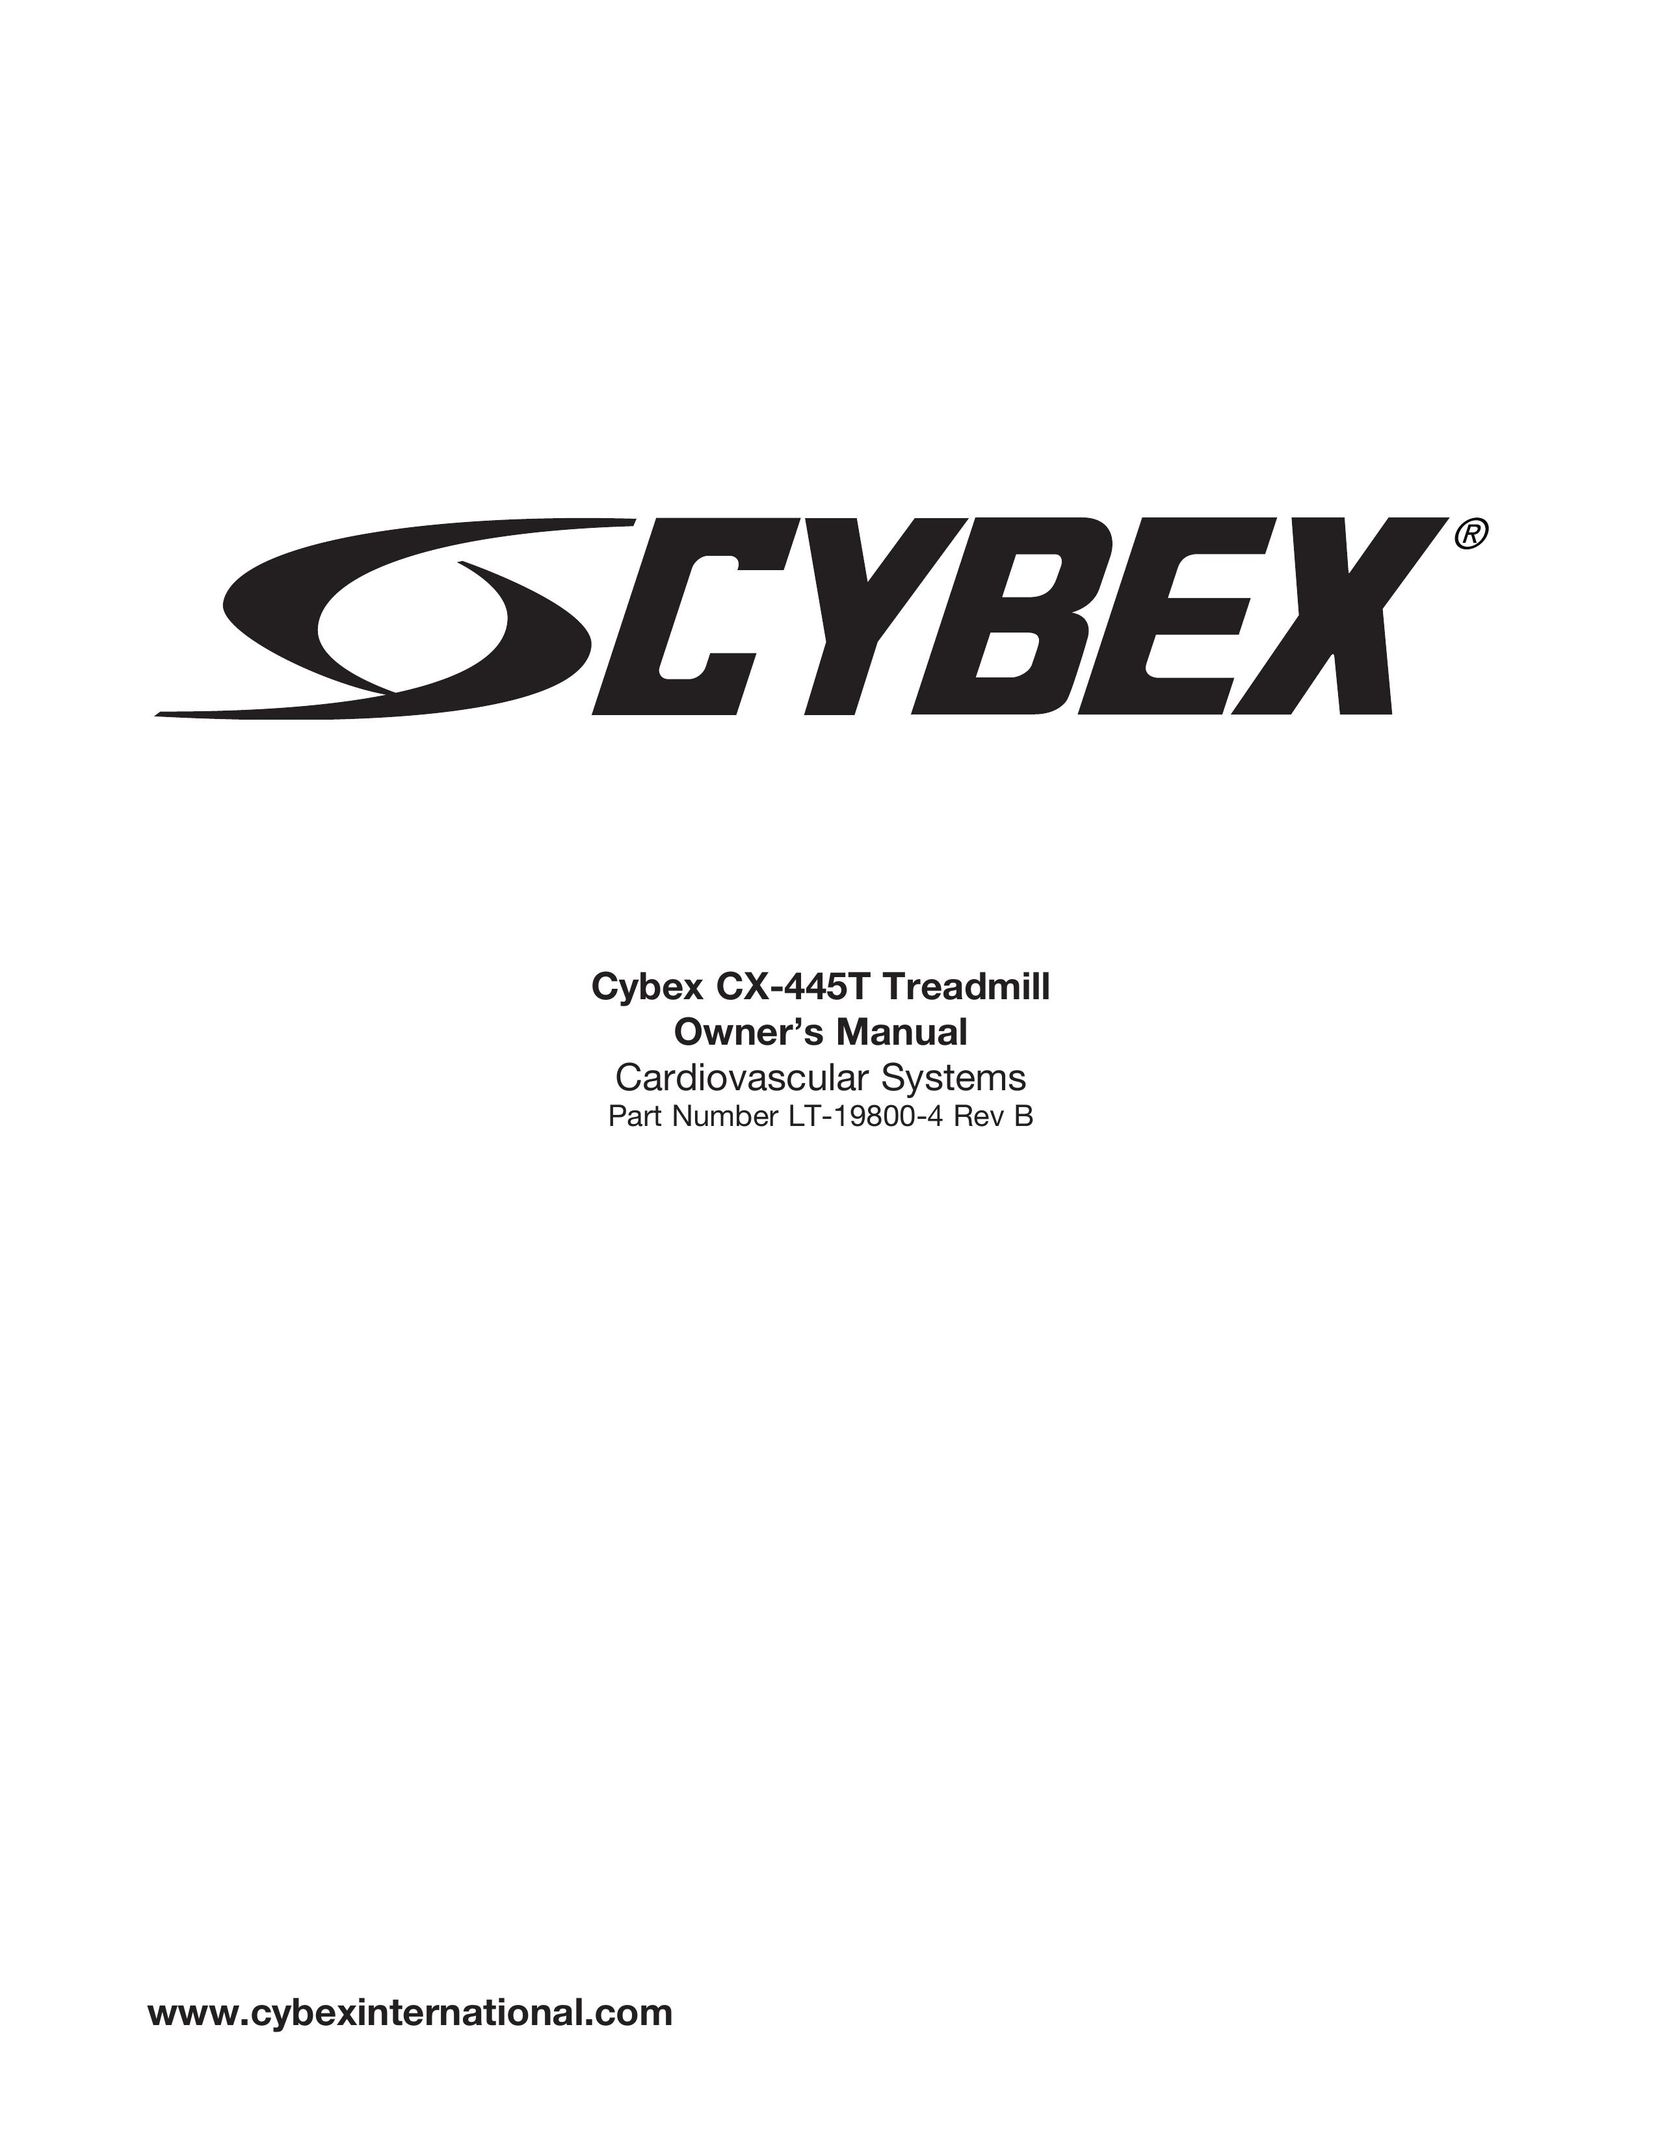 Cybex International CX-445T Treadmill User Manual